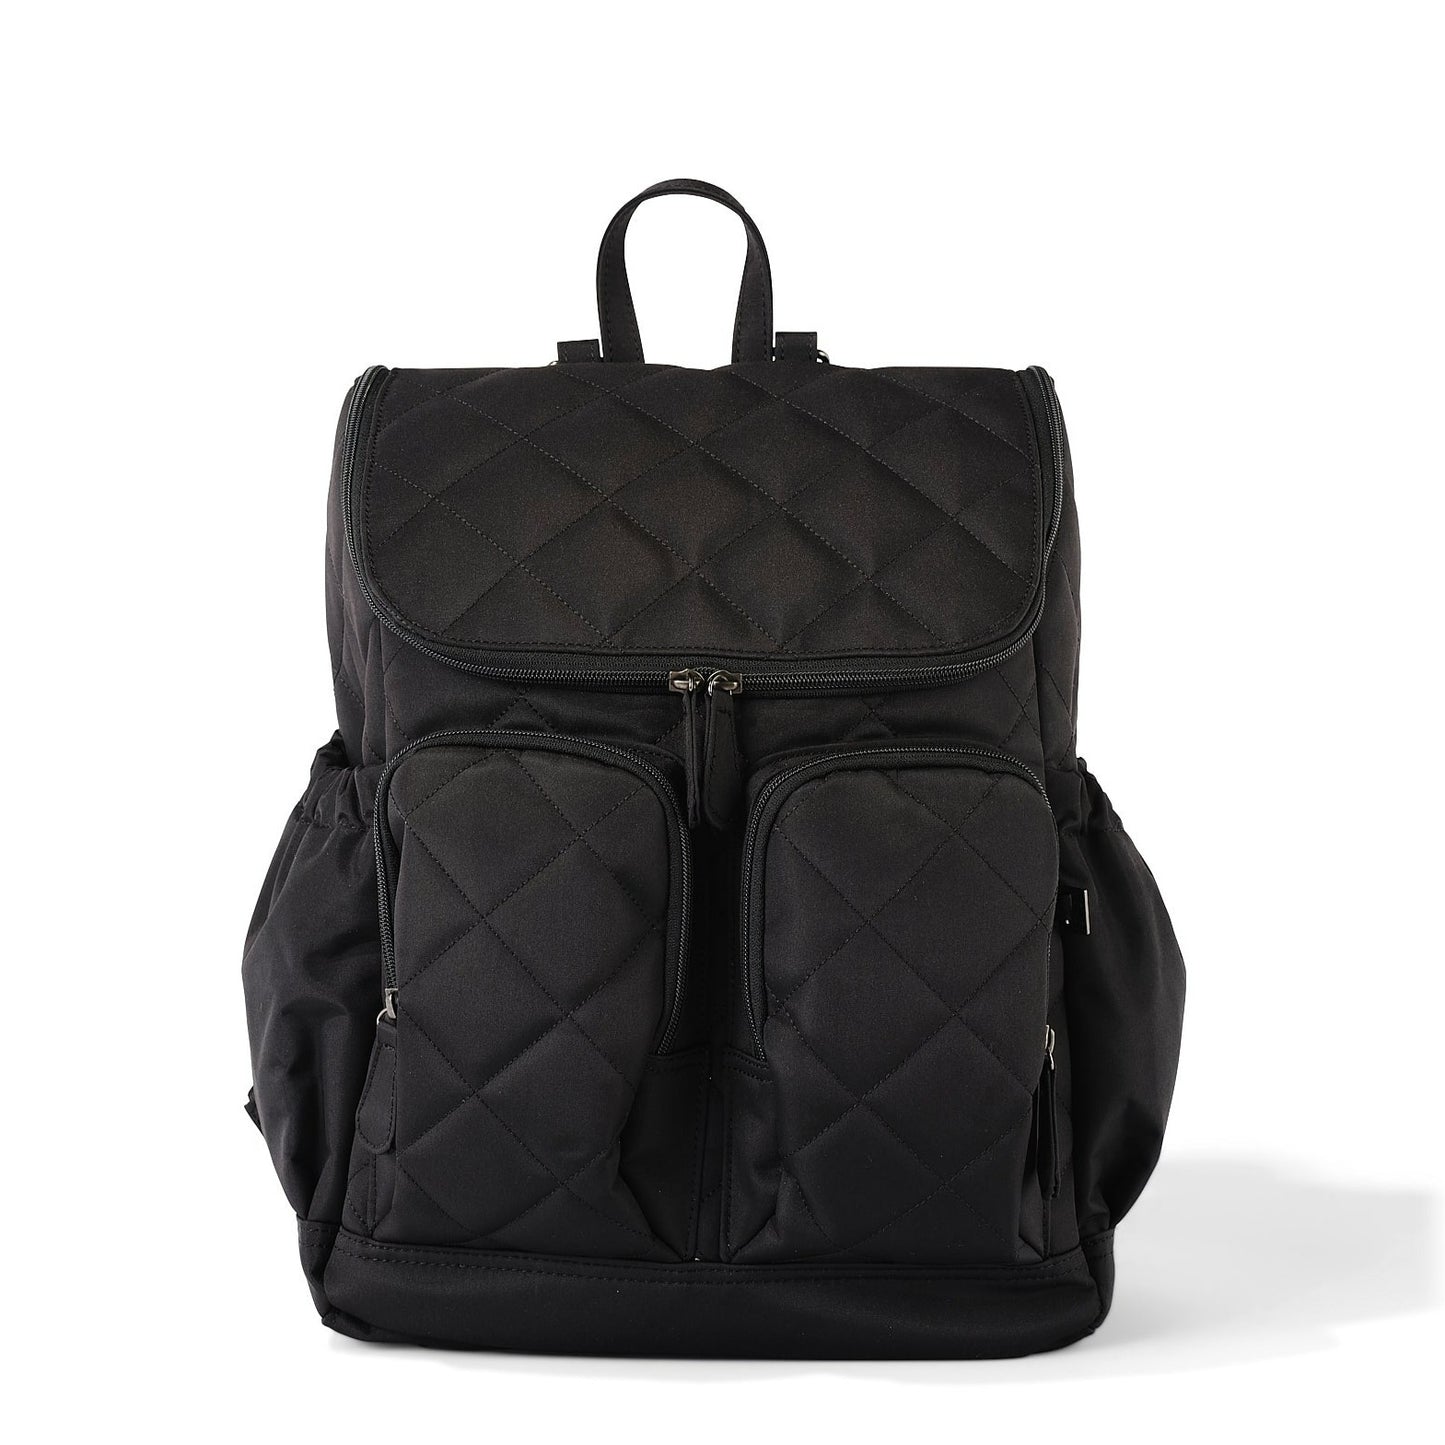 Signature Diaper Backpack - Black Diamond Quilt